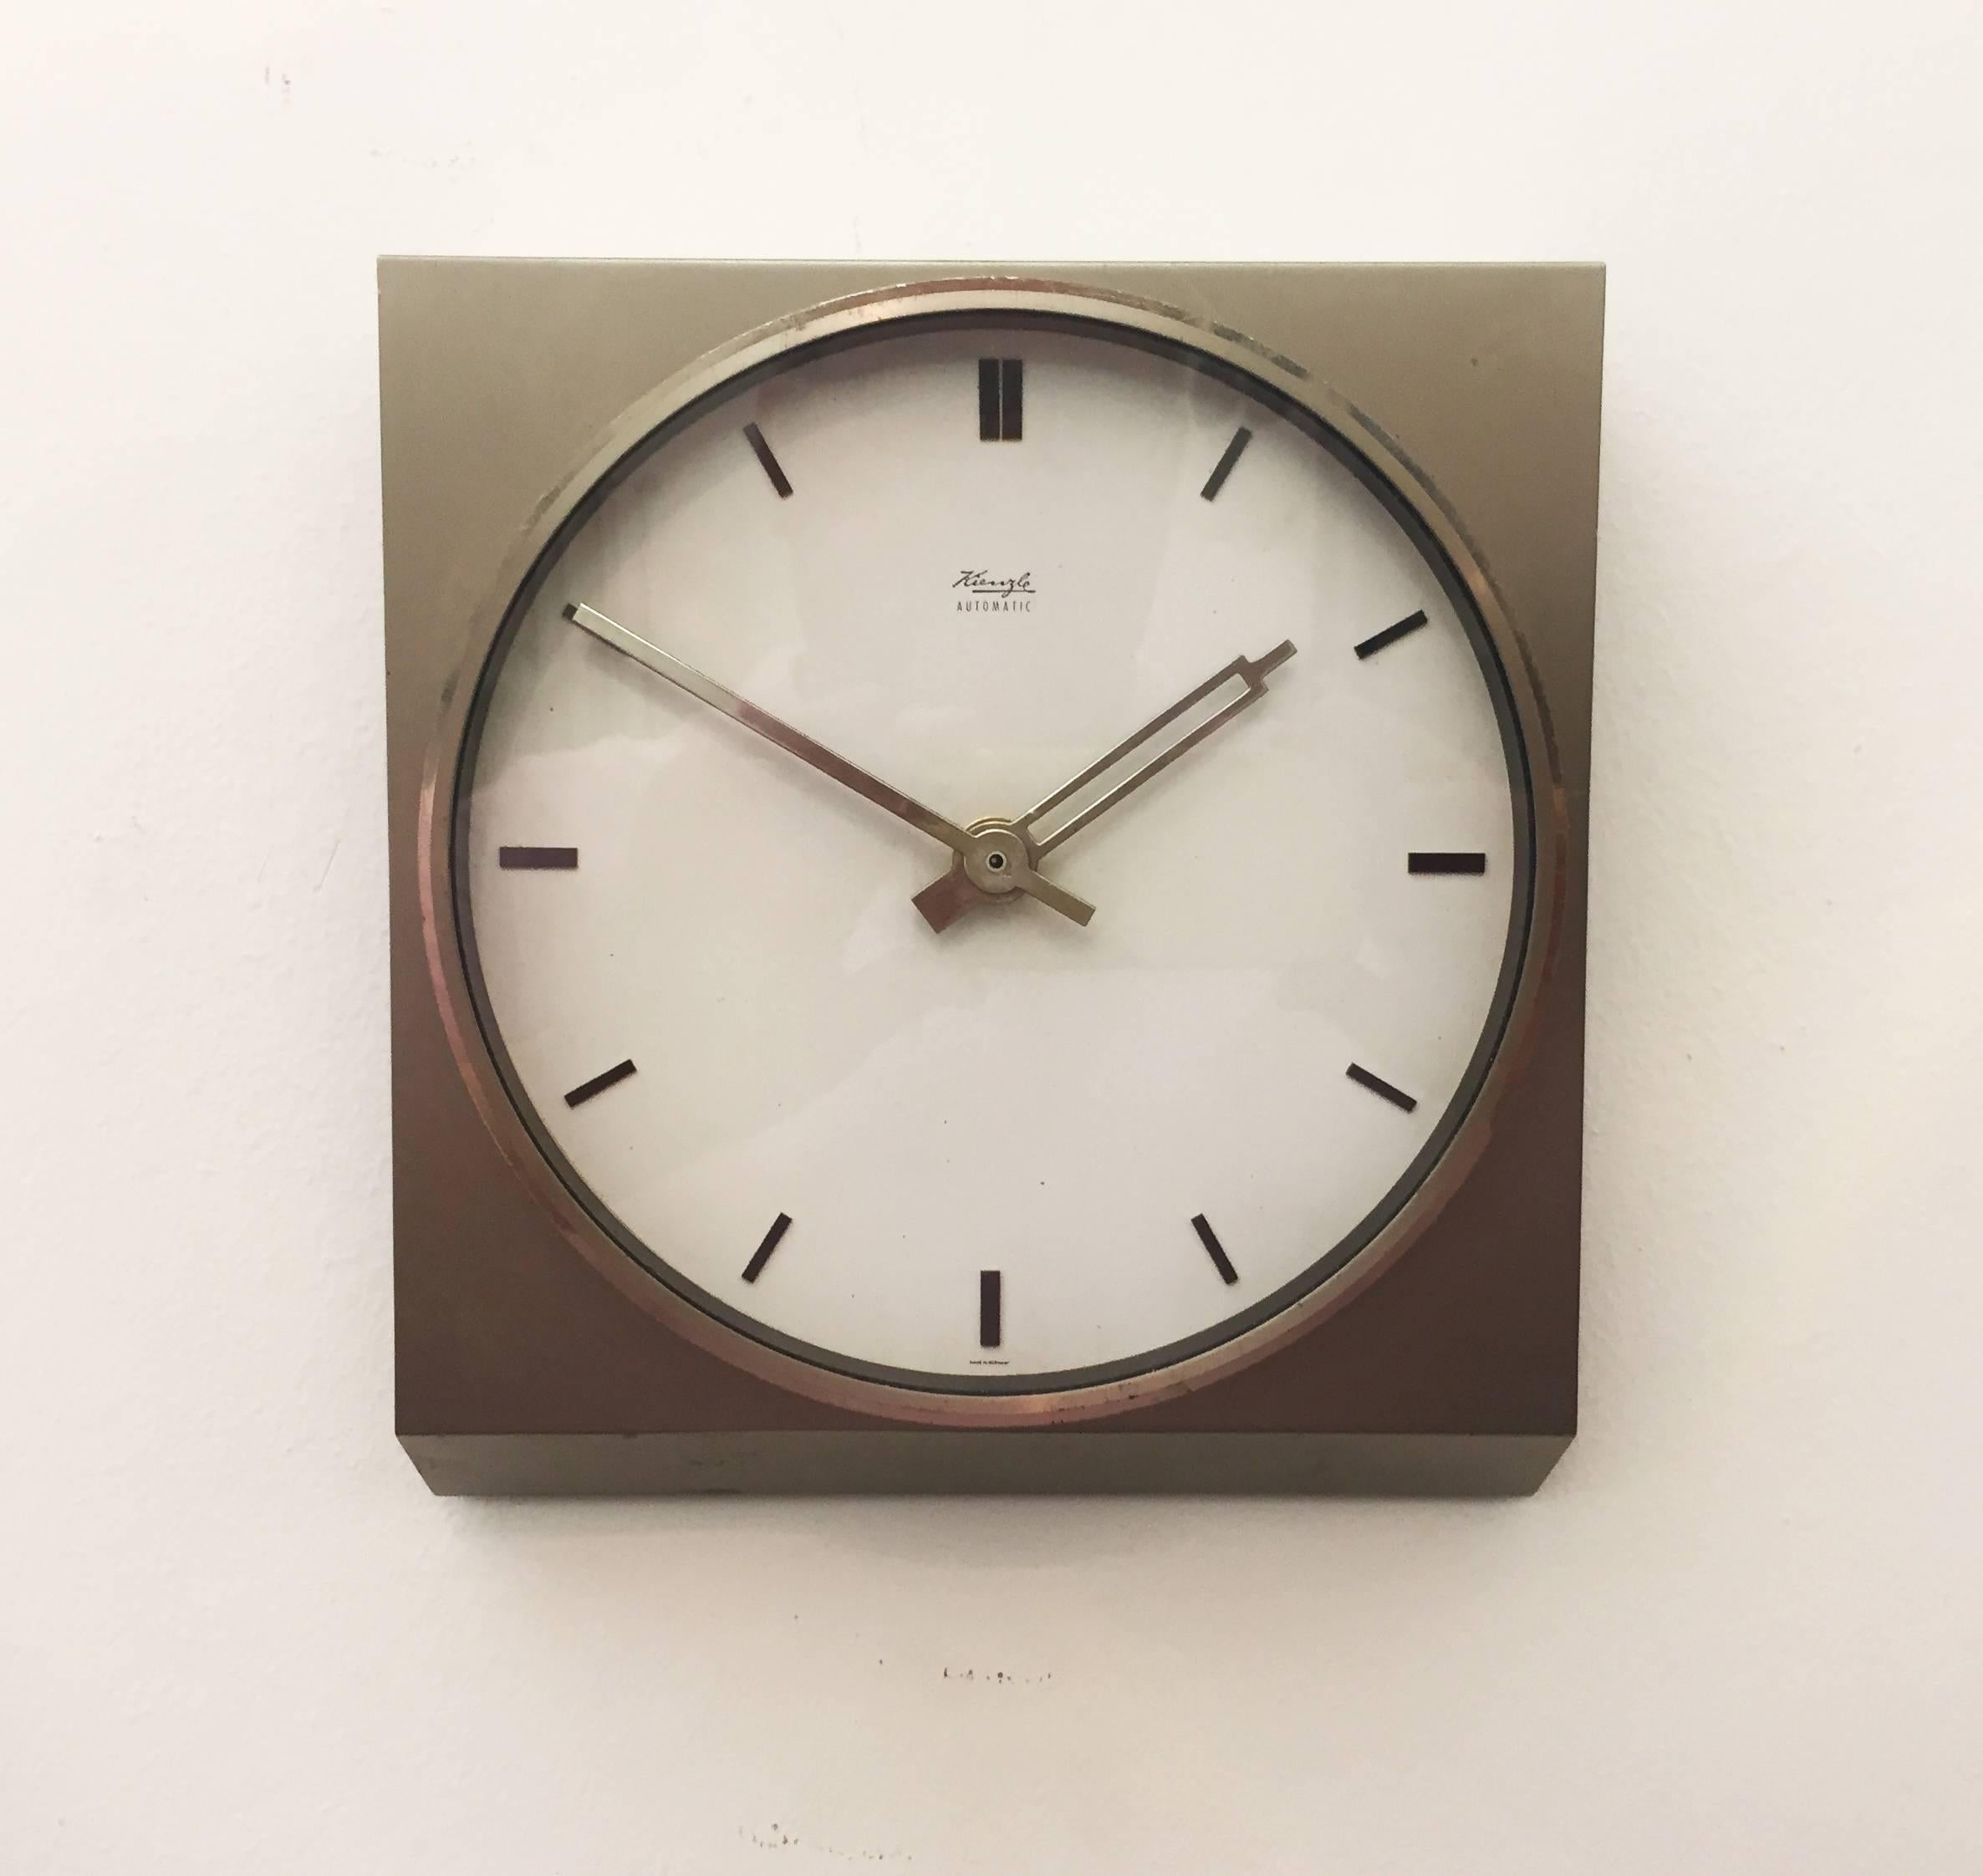 German Midcentury Kienzle Wall Clock